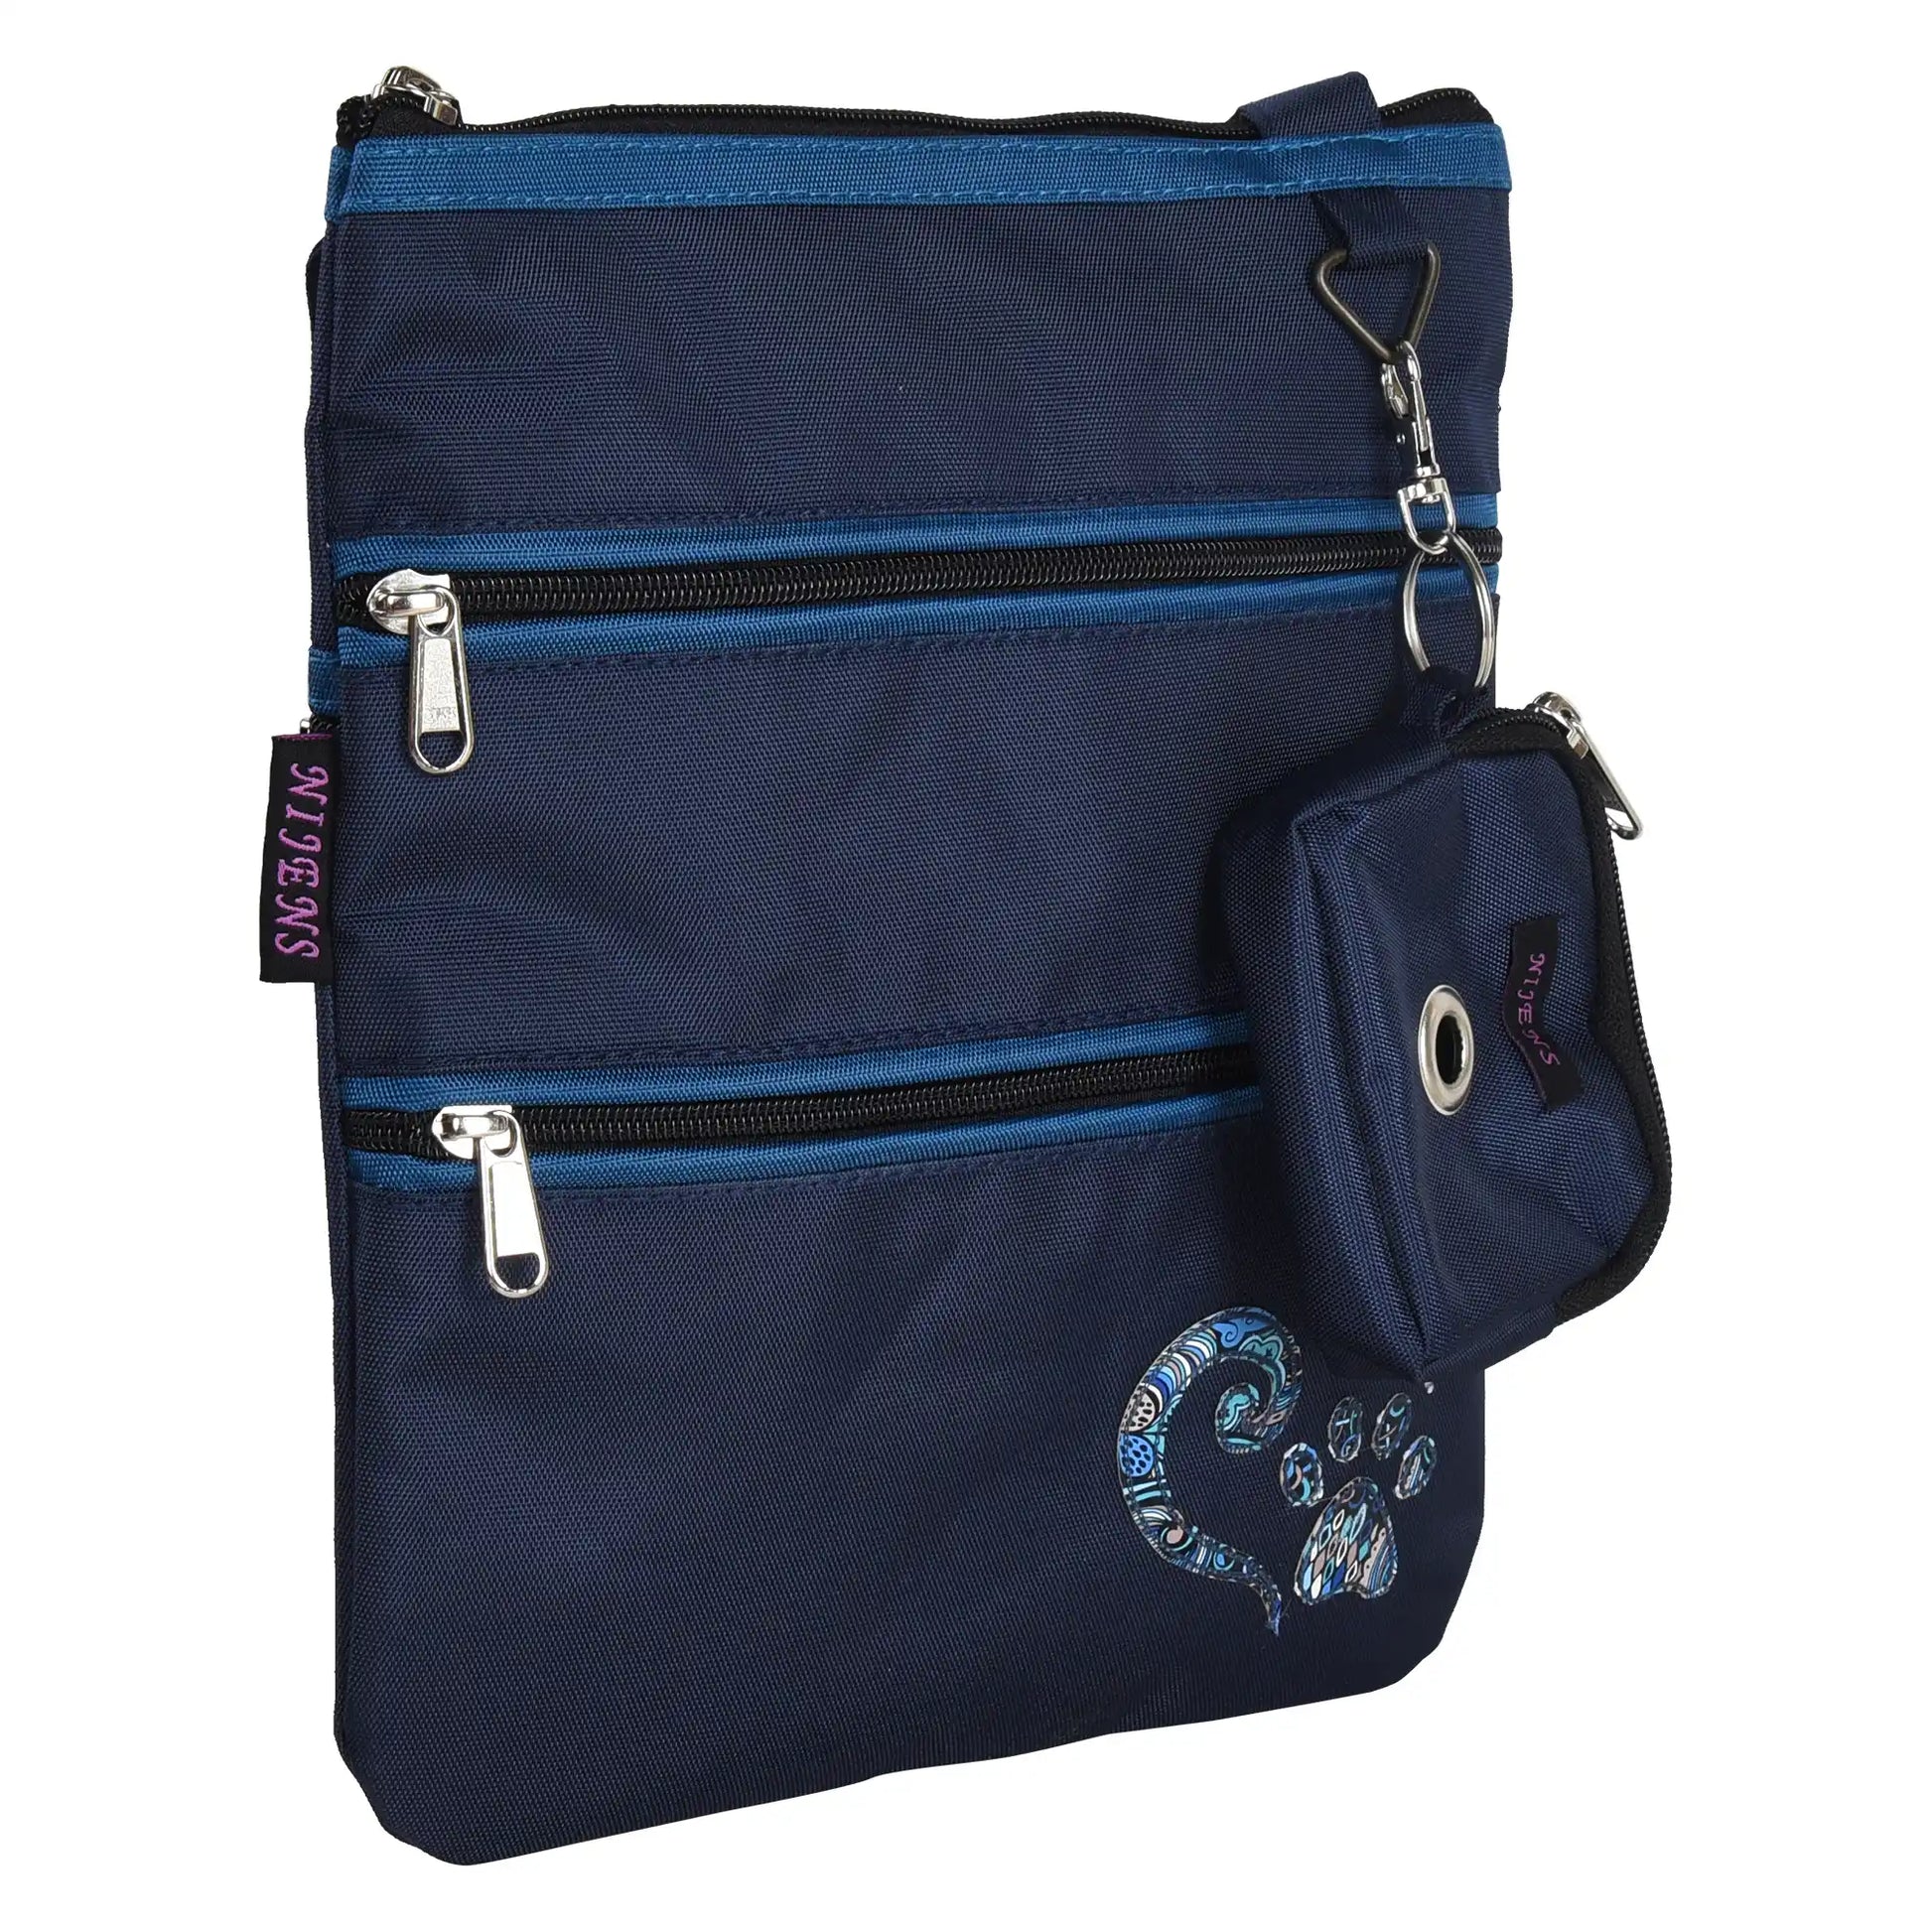 Gassi-Umhängetasche aus wasserabweisenden Stoff Marinablau mit Pfote Herz Applikation, mit 4 Reißverschlusstaschen und einer extra kleinen Beuteltasche für Hundekotbeutel zum Anhängen.